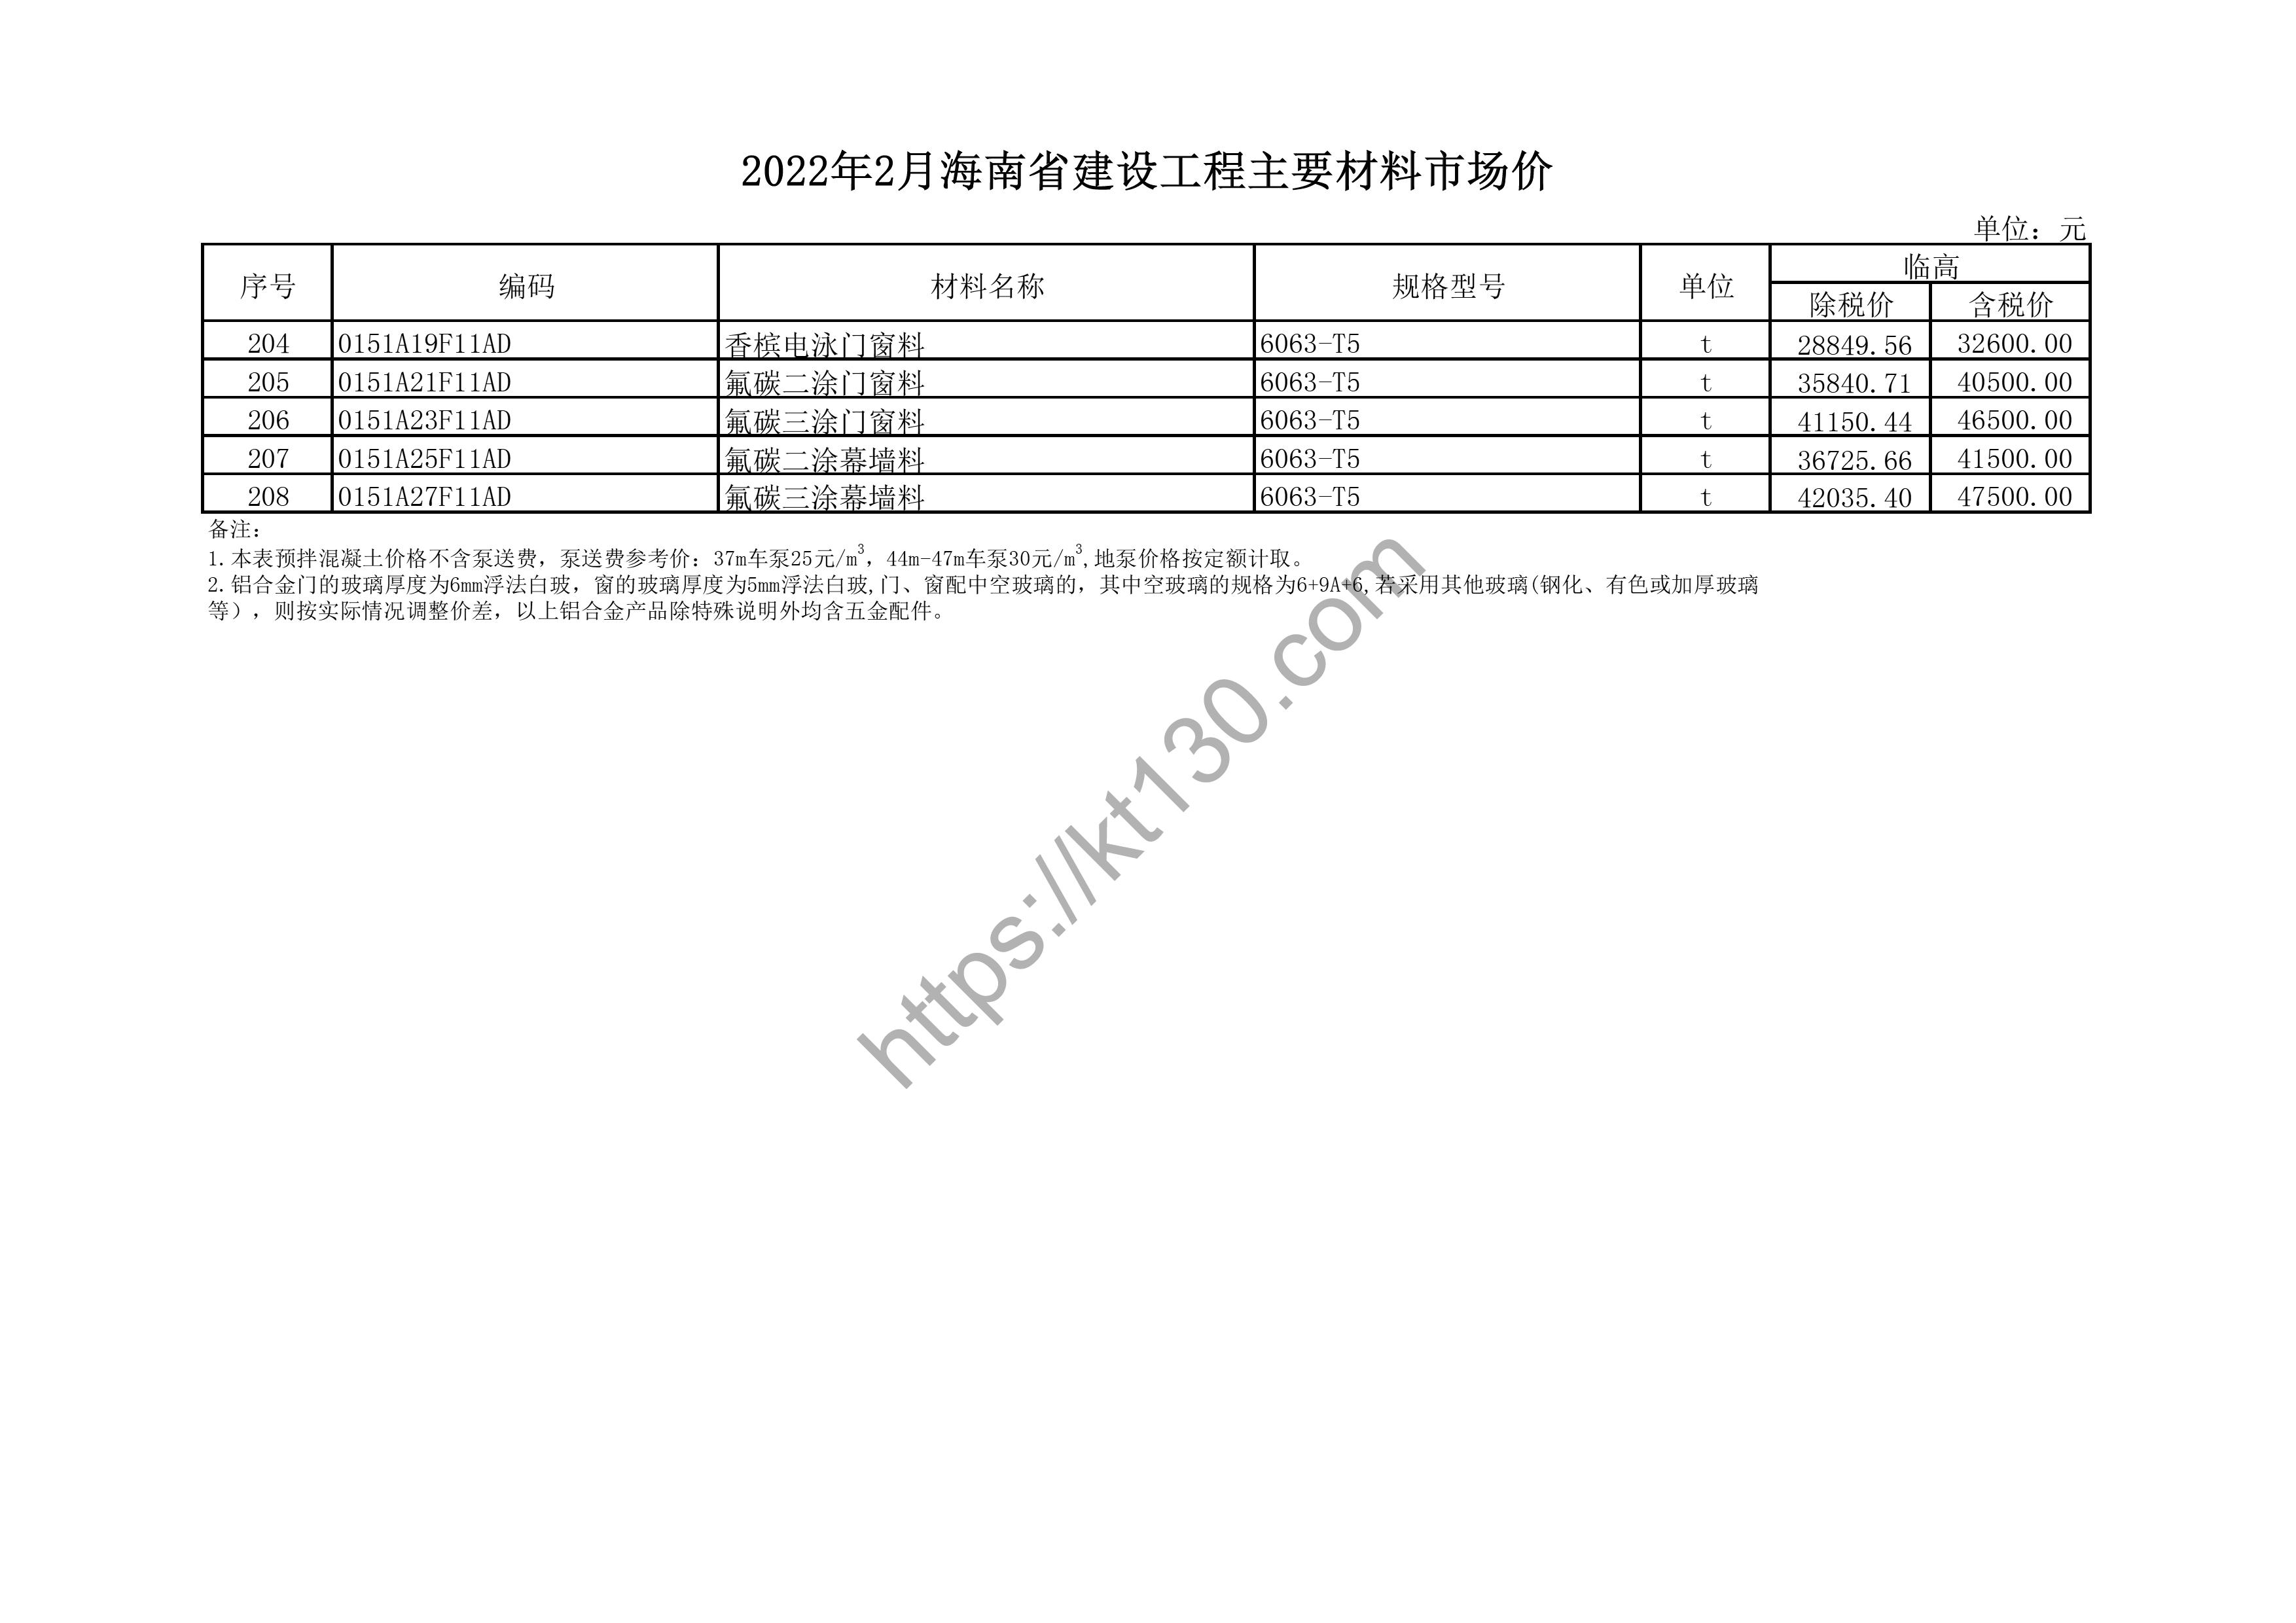 海南省2022年2月建筑材料价_杂木仿材_43876